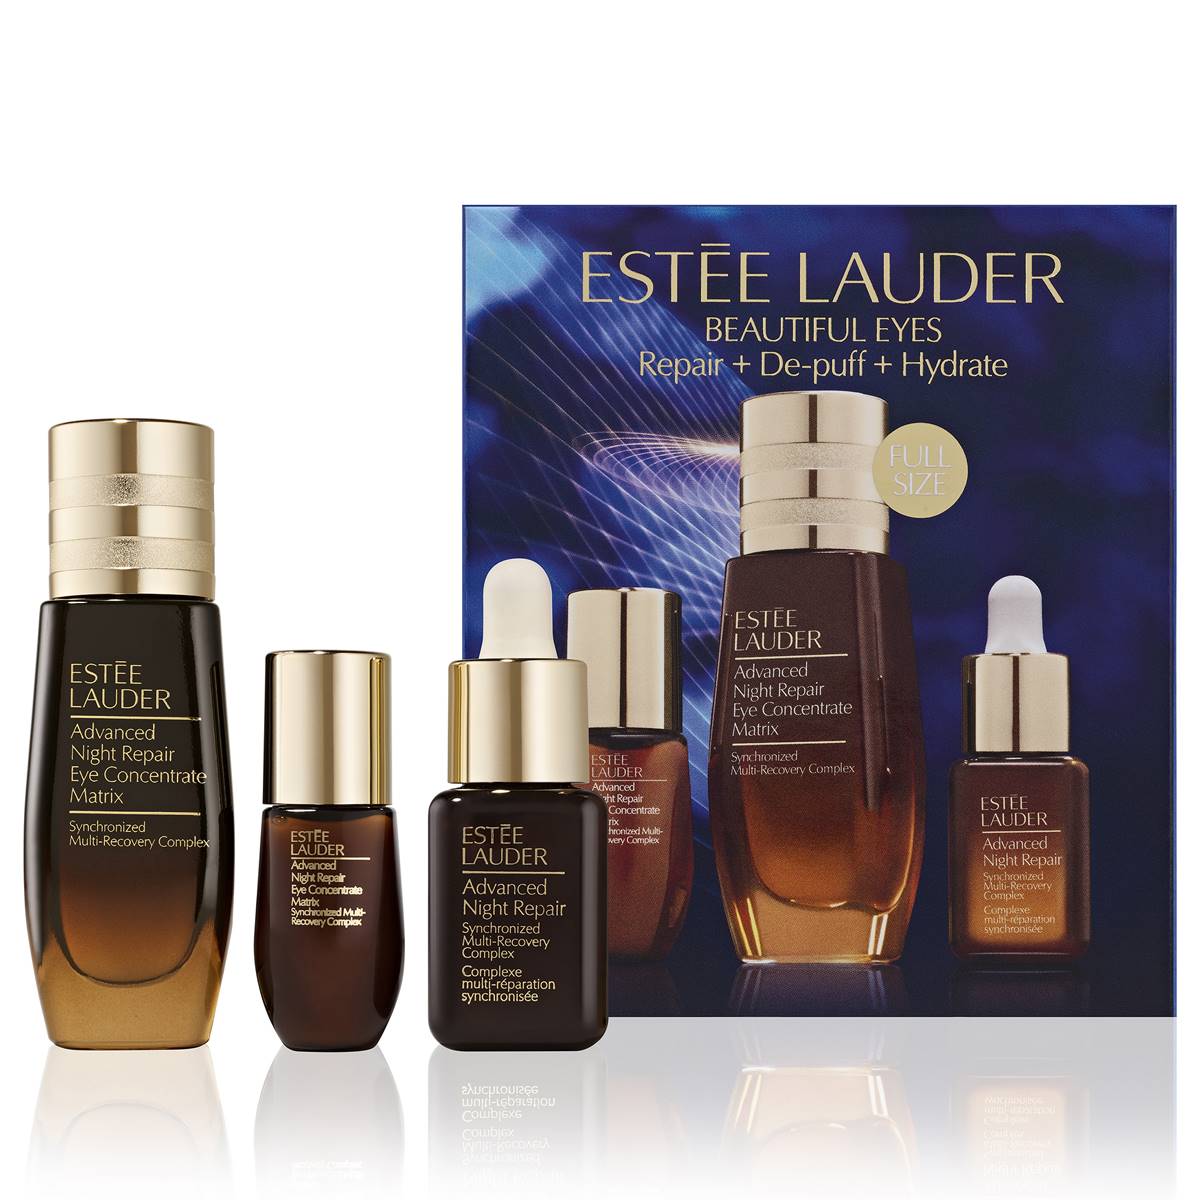 Estee Lauder(tm) Night Repair Eye Concentrate Matrix Skincare Set